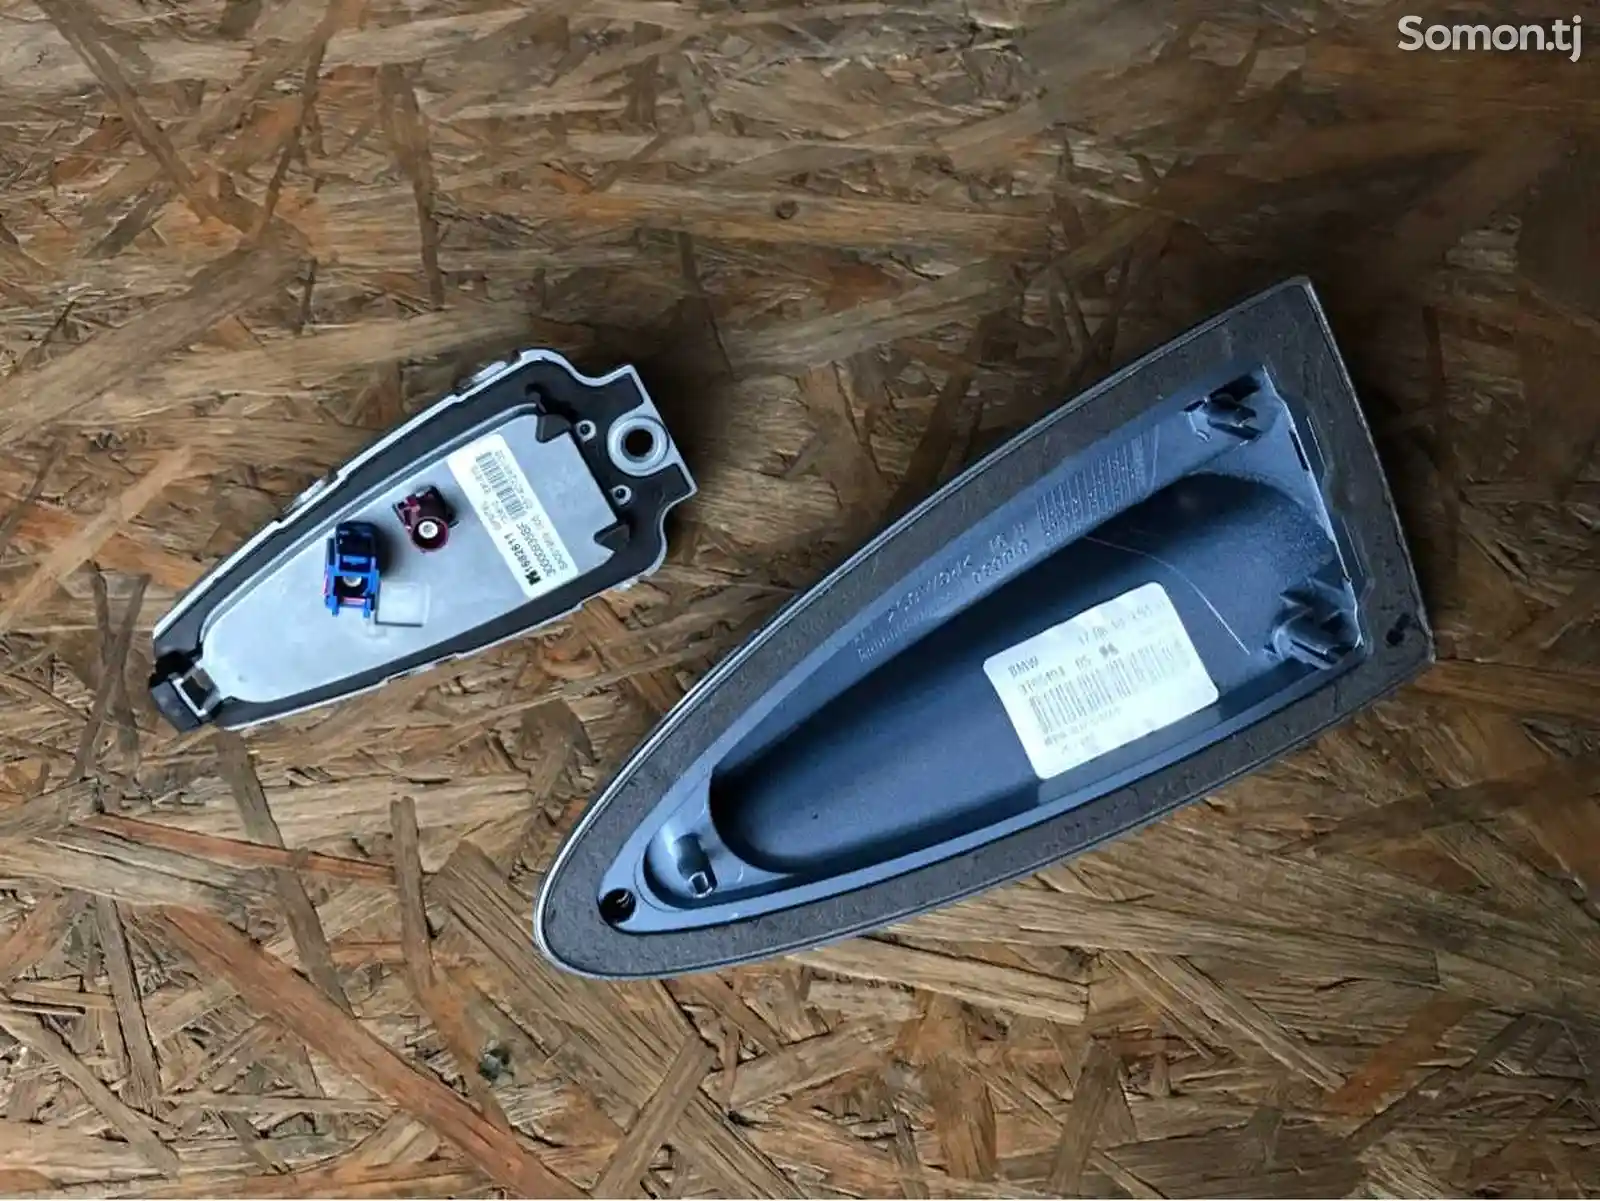 Плавник с антенной на крышу BMW X5 - Е70, BMW 3 - Е90/Е91-4